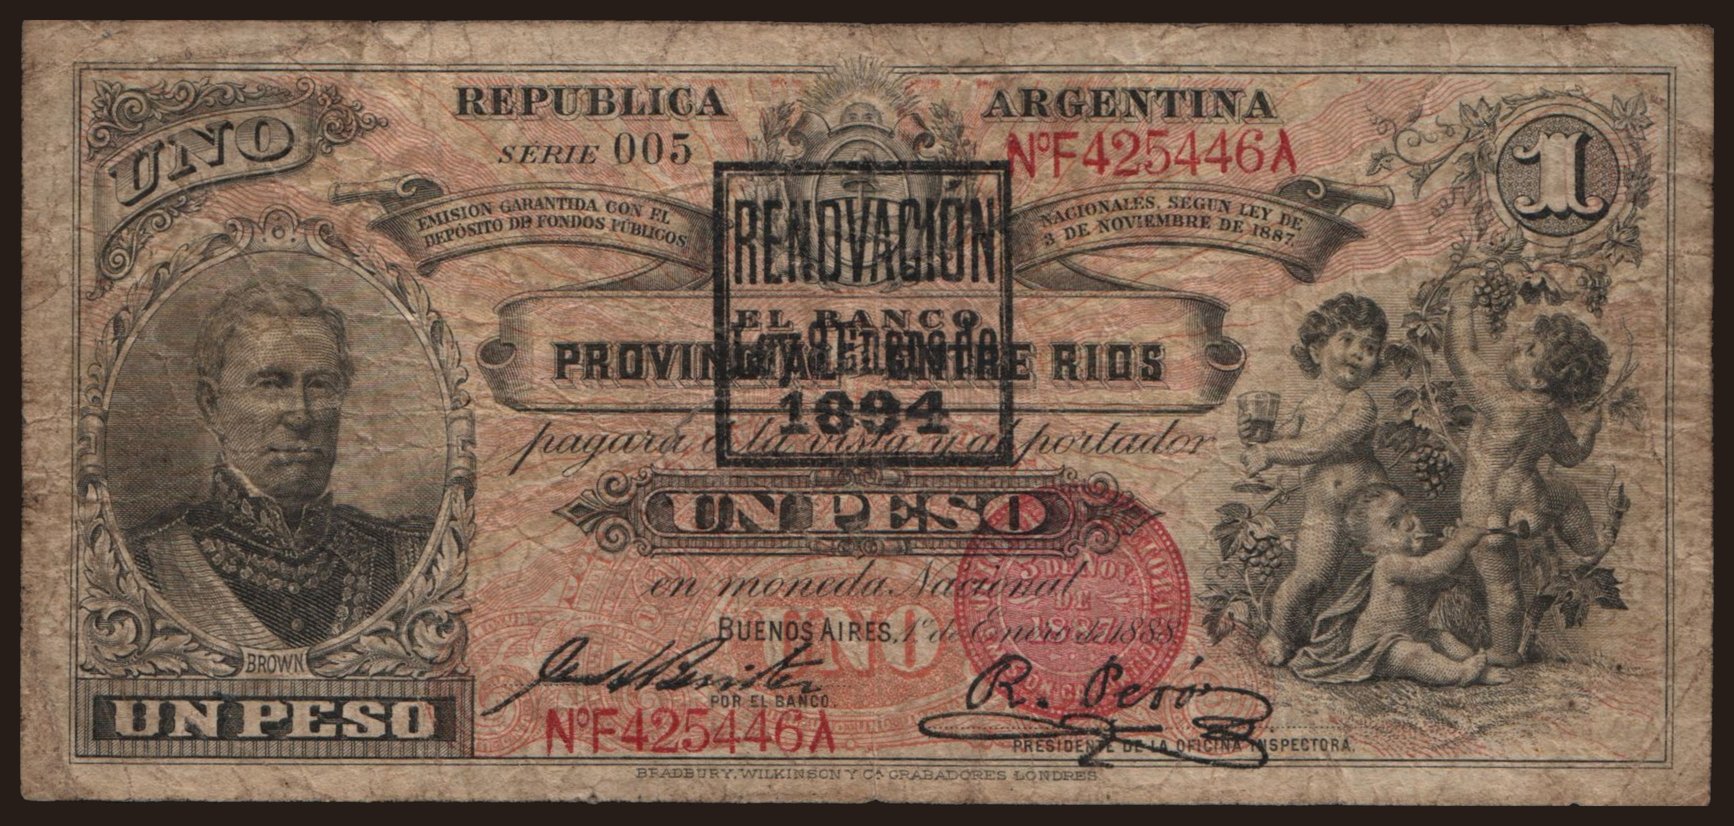 Banco Provincial Entre Rios, 1 peso, 1894